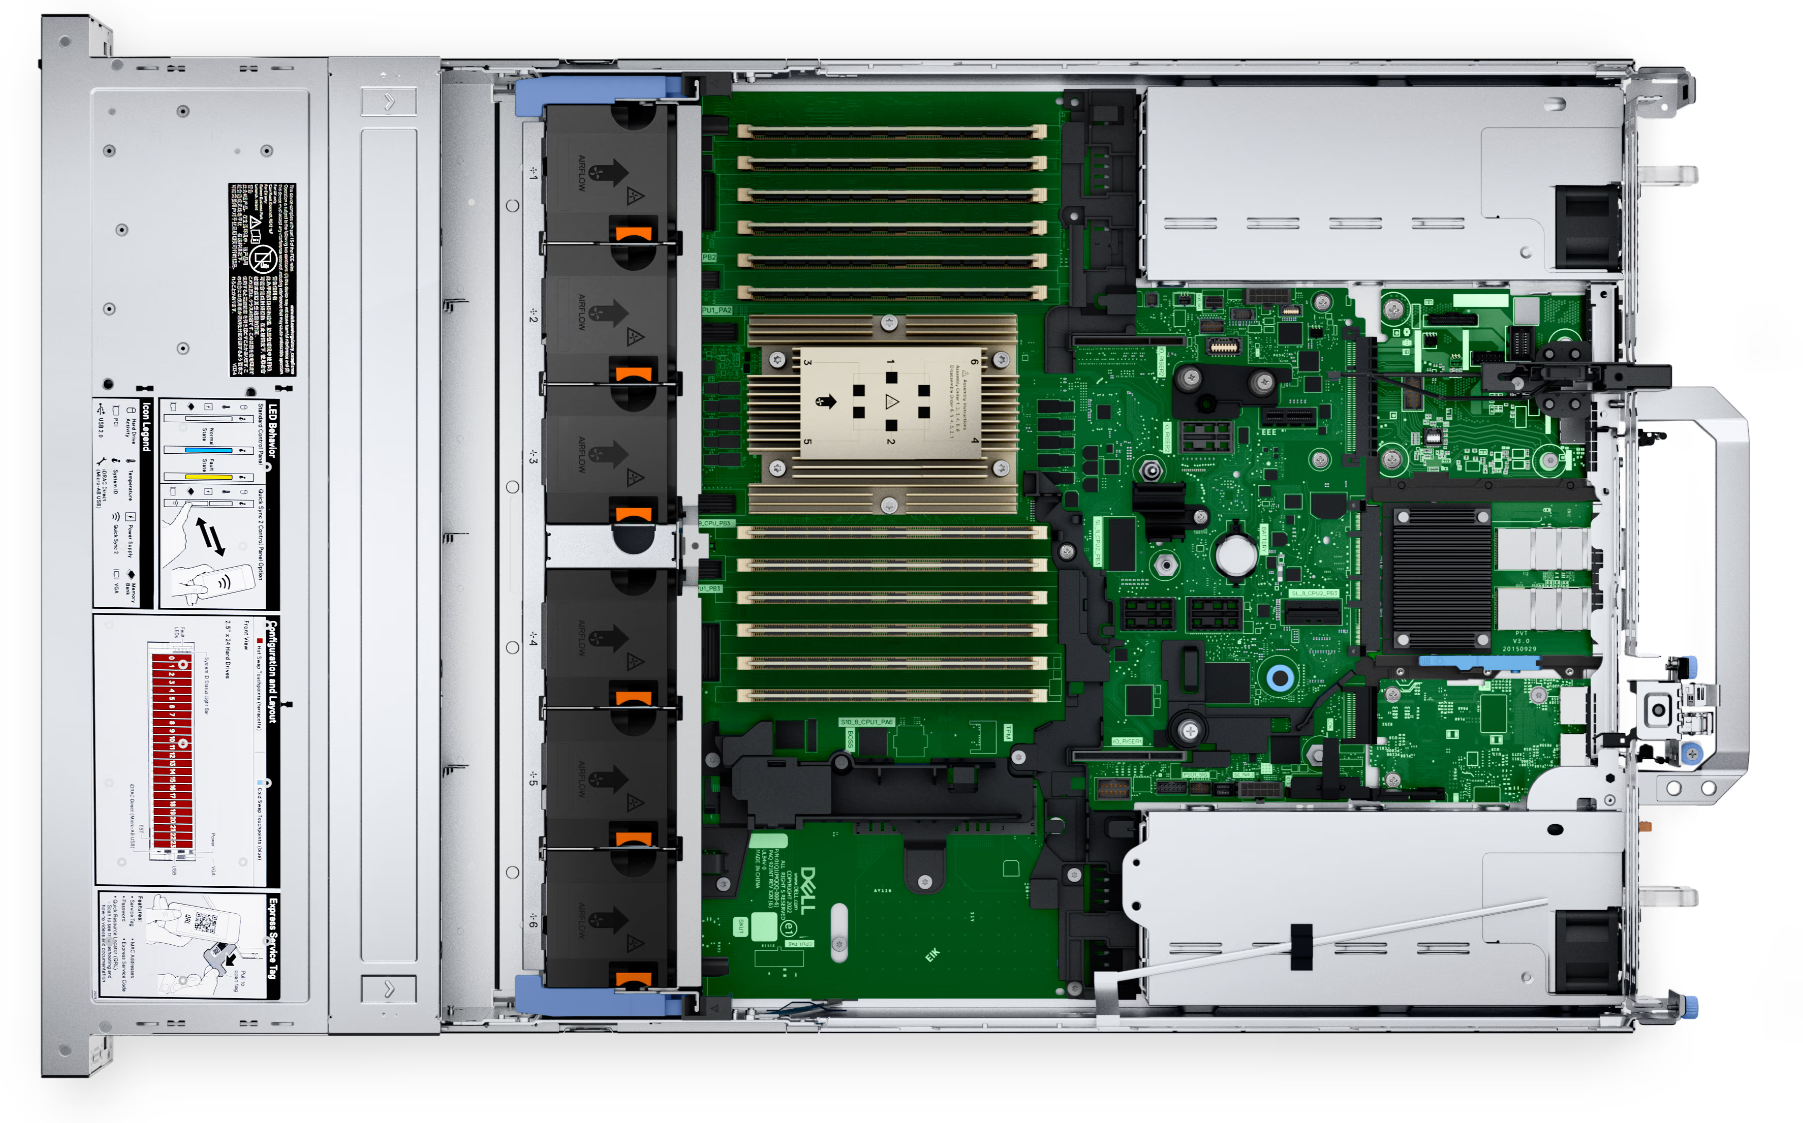 Сервер Dell PowerEdge R7615 - AMD EPYC 9654 2.40GHz 96 Cores